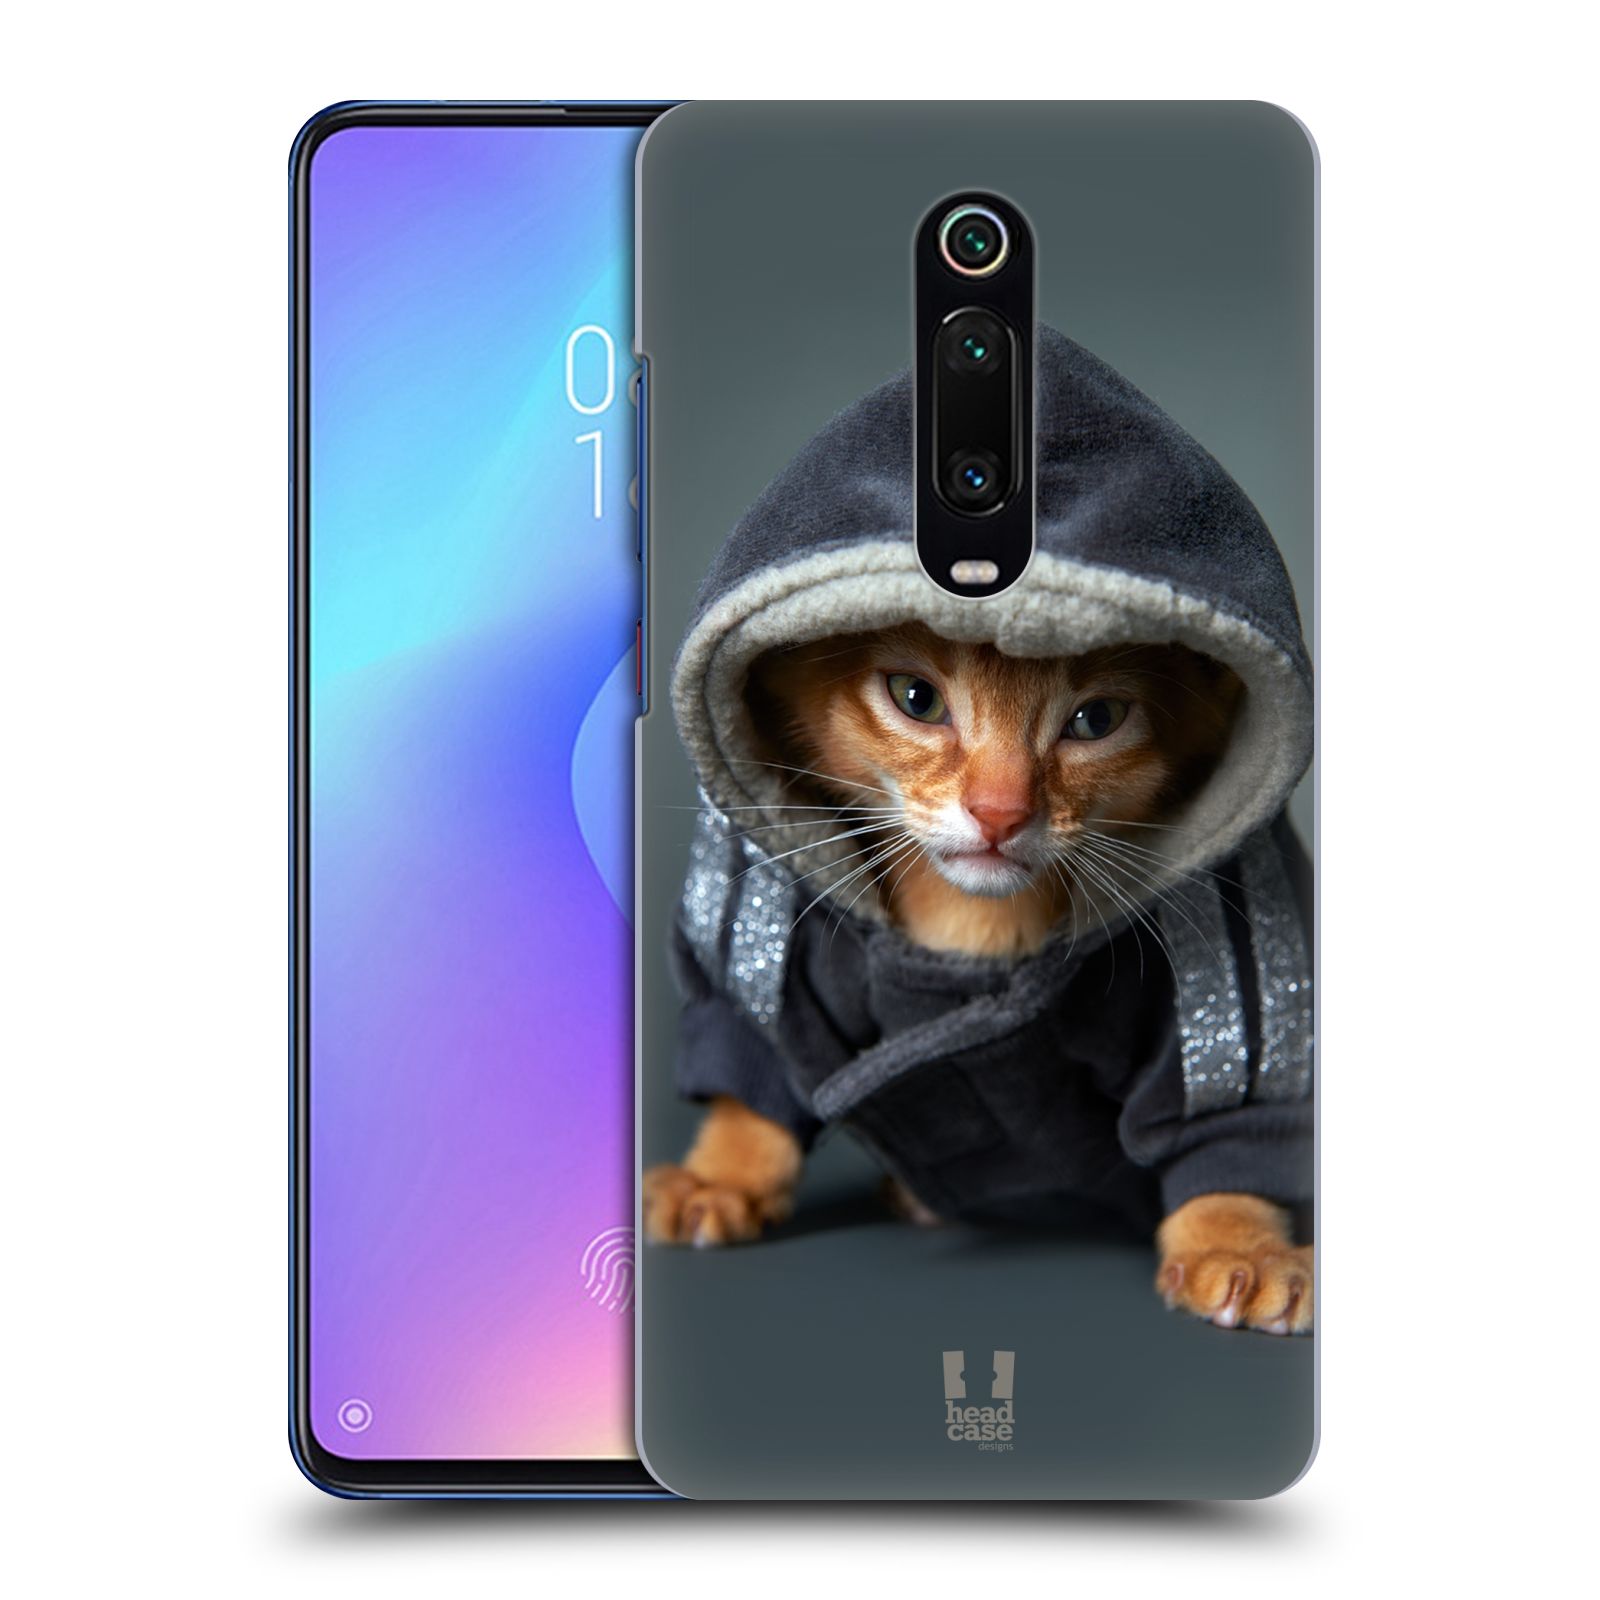 Pouzdro na mobil Xiaomi Mi 9T PRO - HEAD CASE - vzor Legrační zvířátka kotě/kočička s kapucí